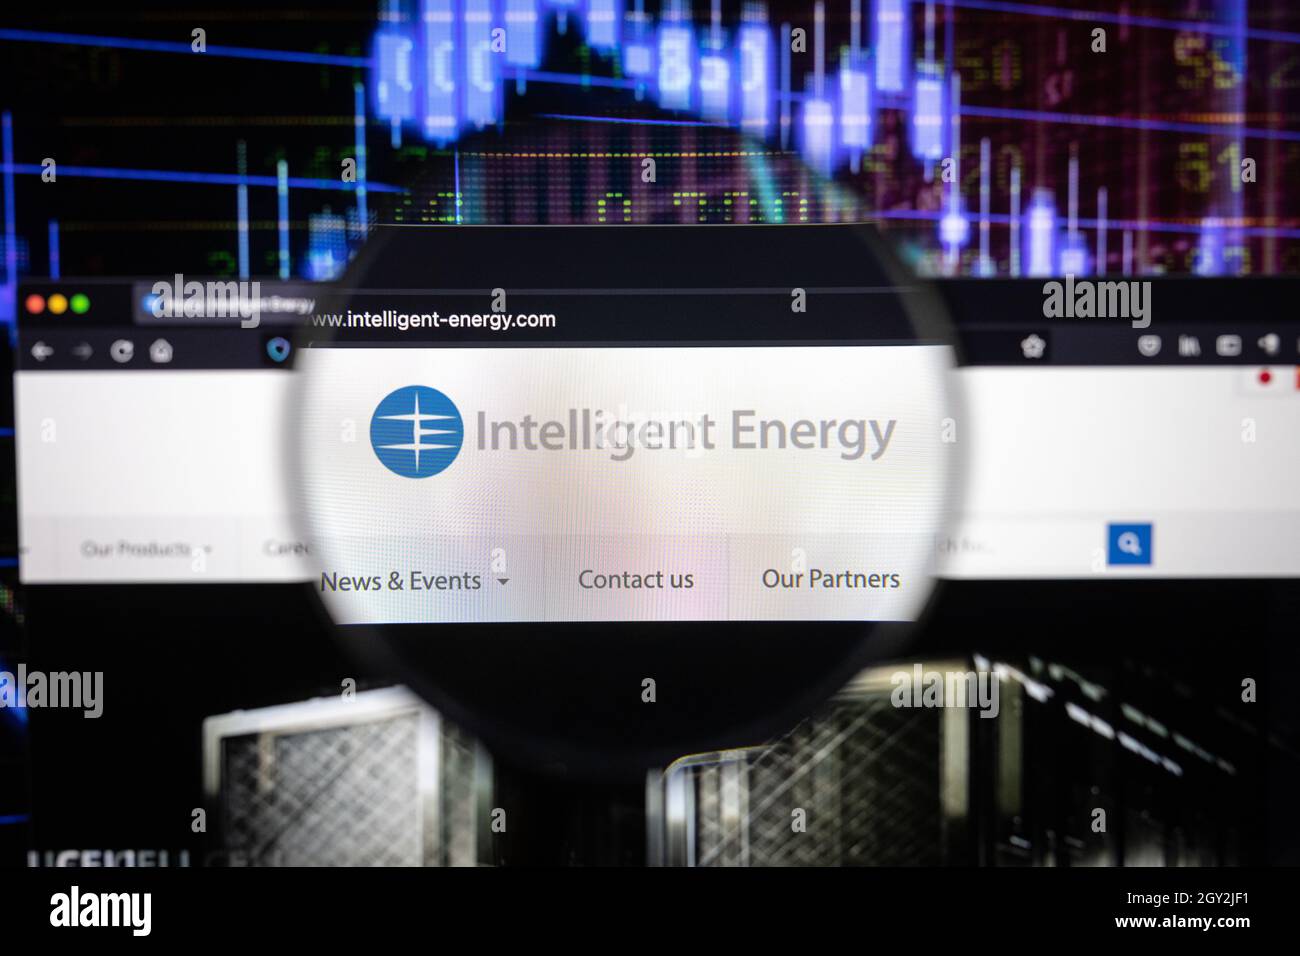 El logotipo de la compañía de Energía Inteligente en un sitio web con desarrollos borrosos del mercado de valores en el fondo, visto en una pantalla de computadora Foto de stock